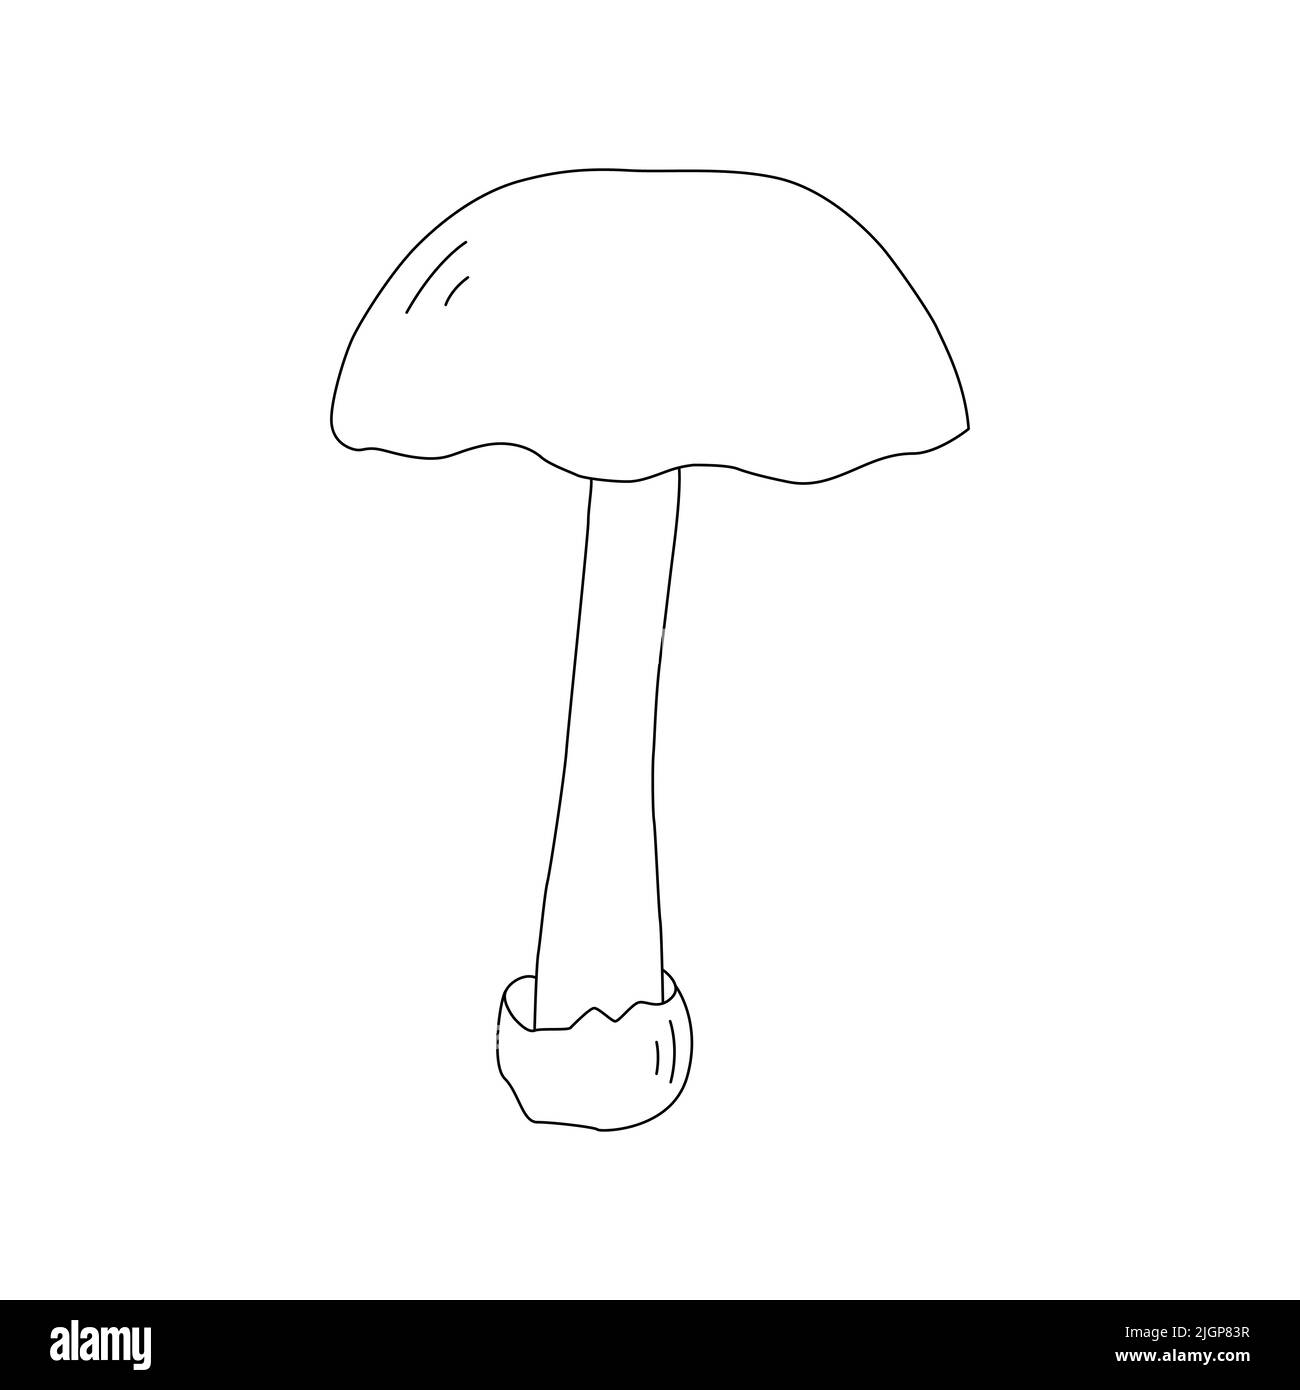 Mushroom Line Art Logo various Mushrooms hand drawn sketch. Stock Vector